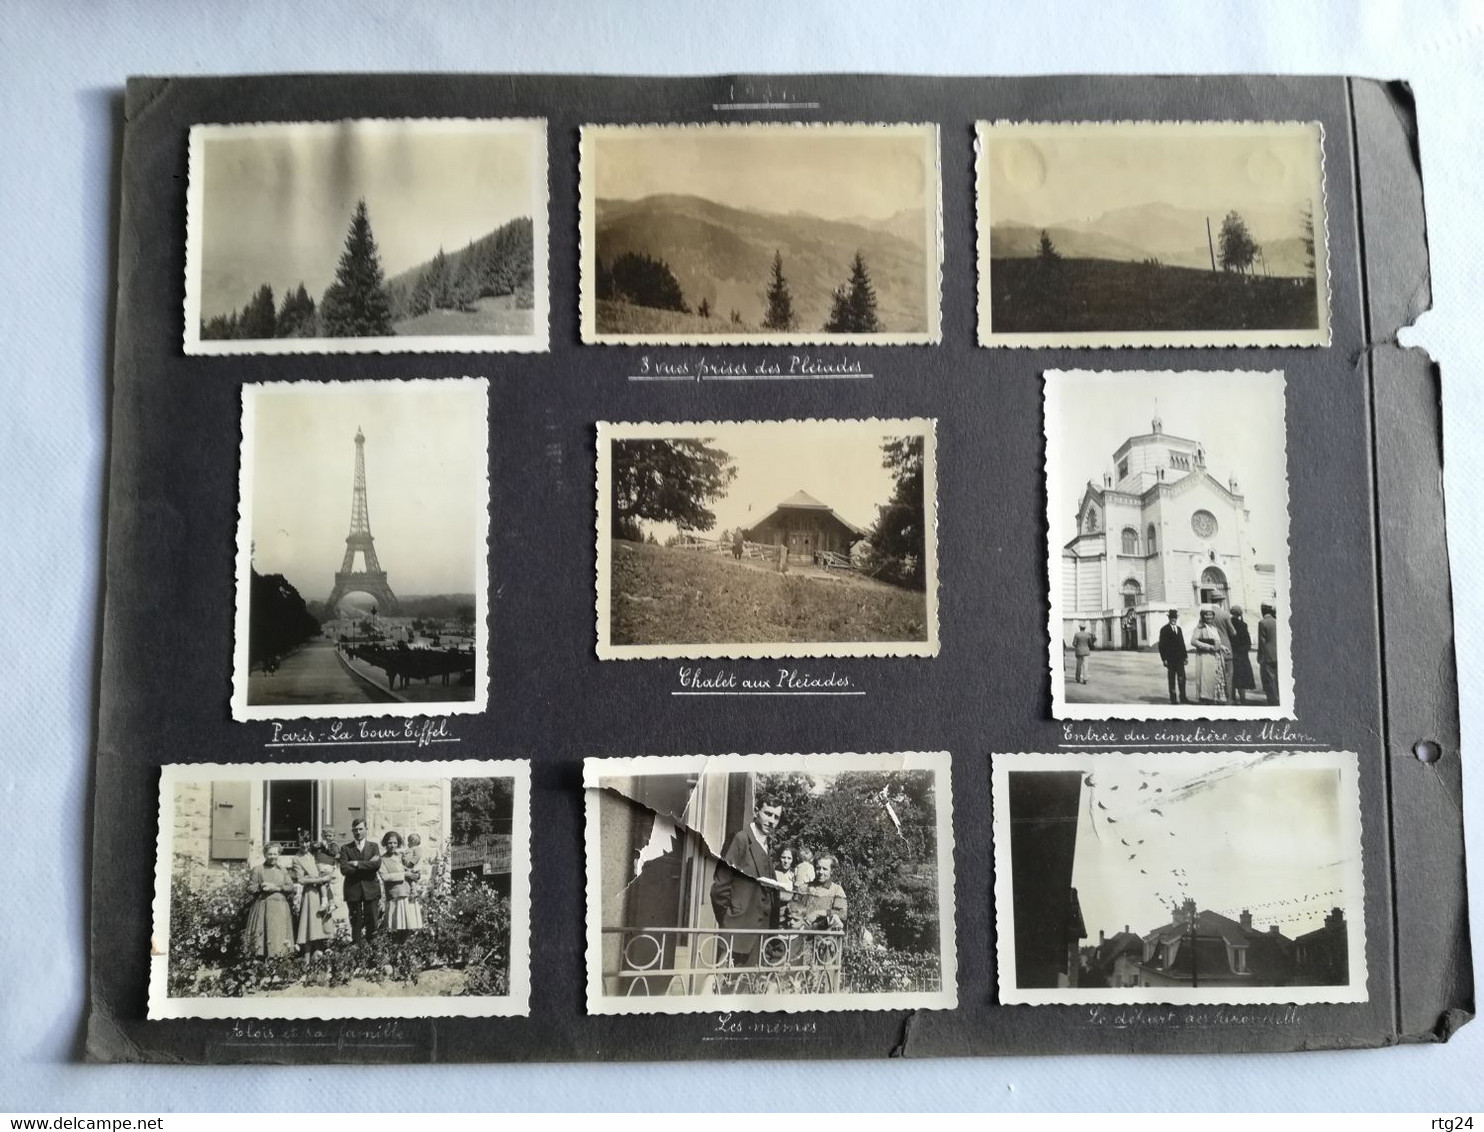 122 photos album  voyage  années 1927à 1939 .multiples endroits de  Suisse et de  France  , expo coloniale Paris 1931.